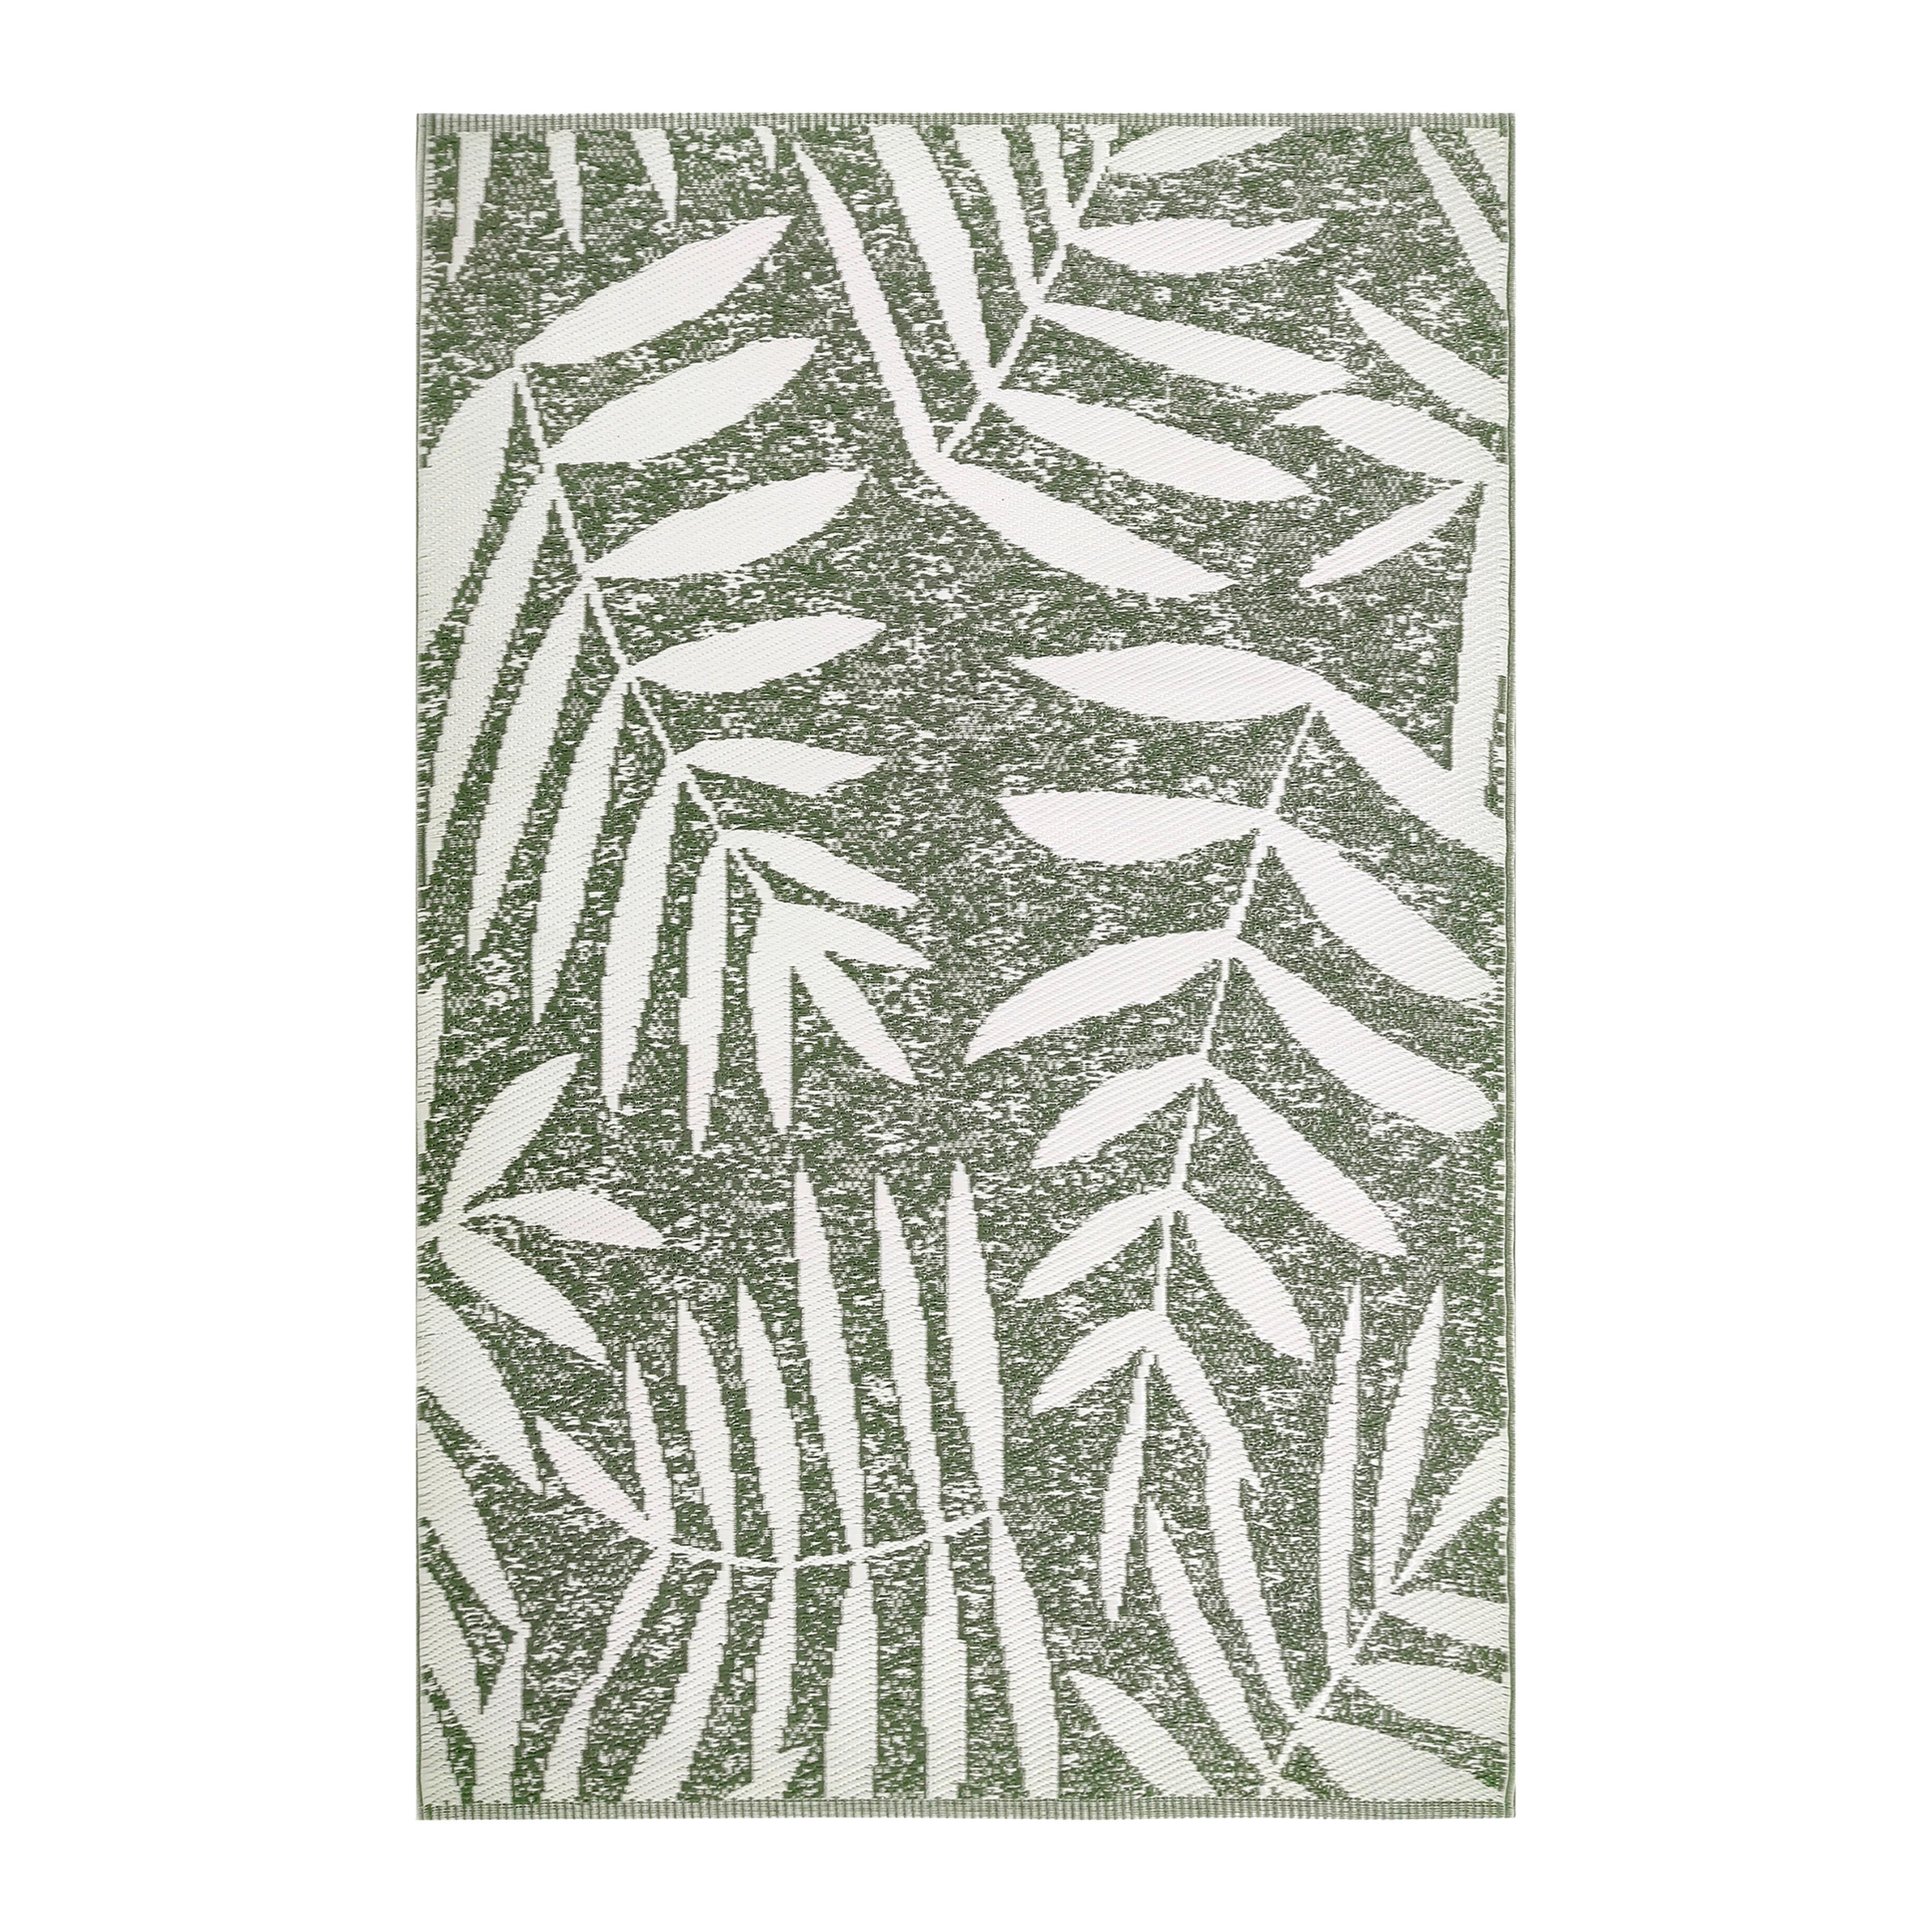 Outdoorteppich Palmira in Olivgrün ca. 120x170cm - Olivgrün, KONVENTIONELL, Textil (120/170cm) - Bessagi Home